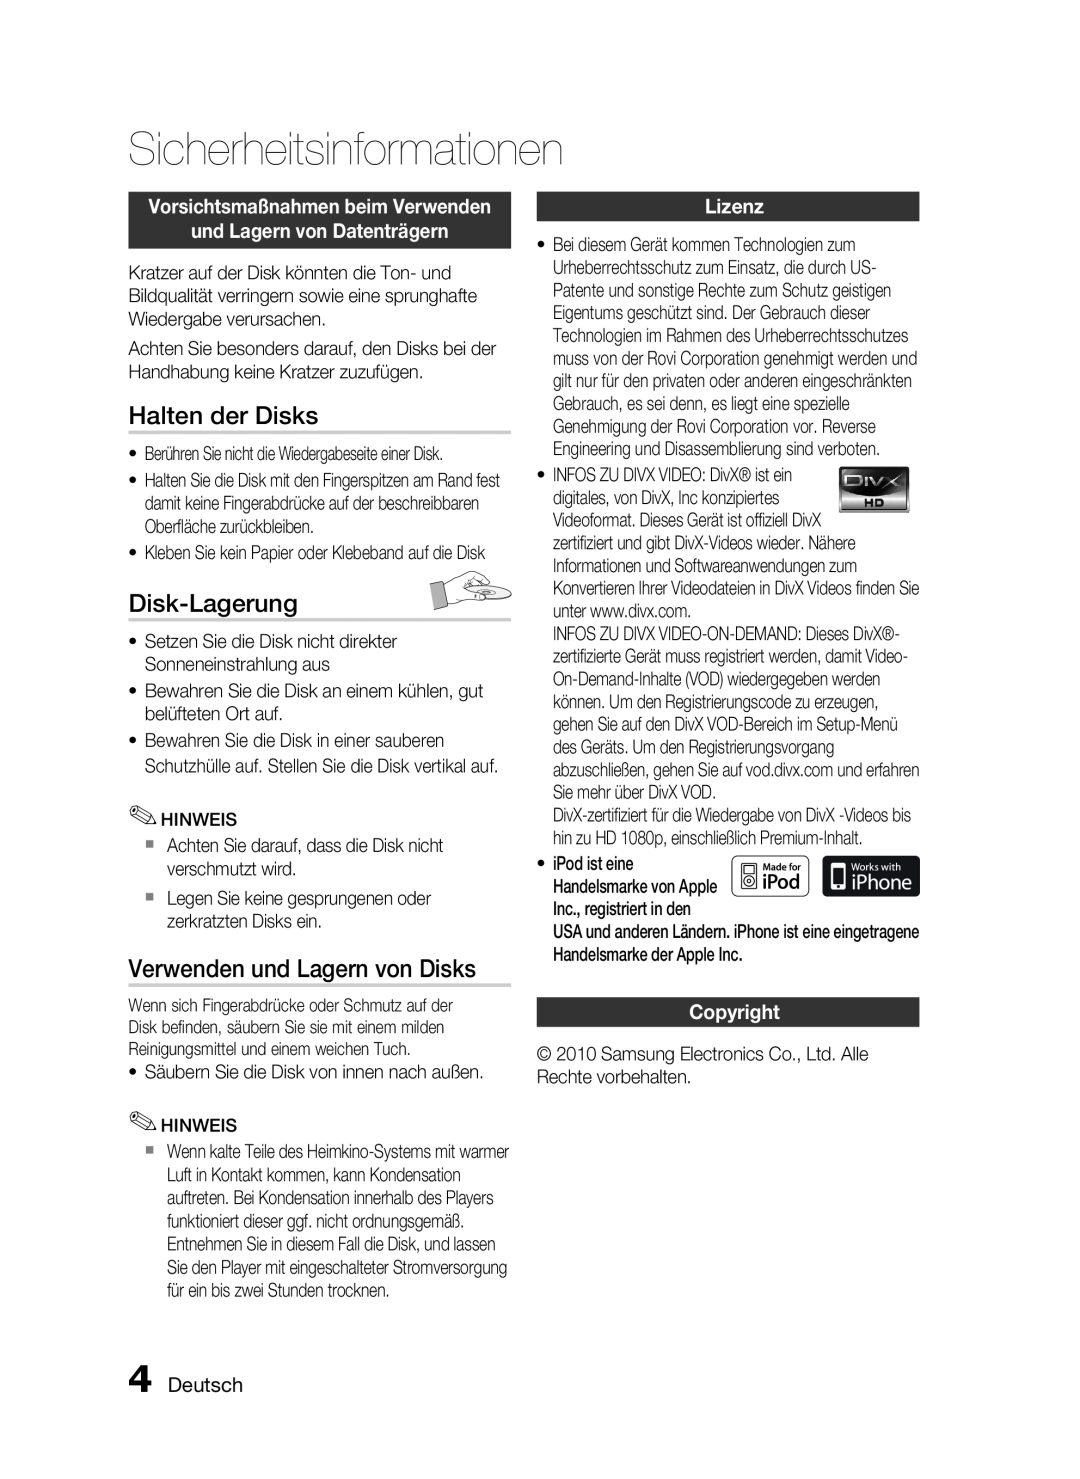 Samsung HT-C6200/EDC manual Halten der Disks, Disk-Lagerung, Verwenden und Lagern von Disks, Lizenz, Copyright, Deutsch 